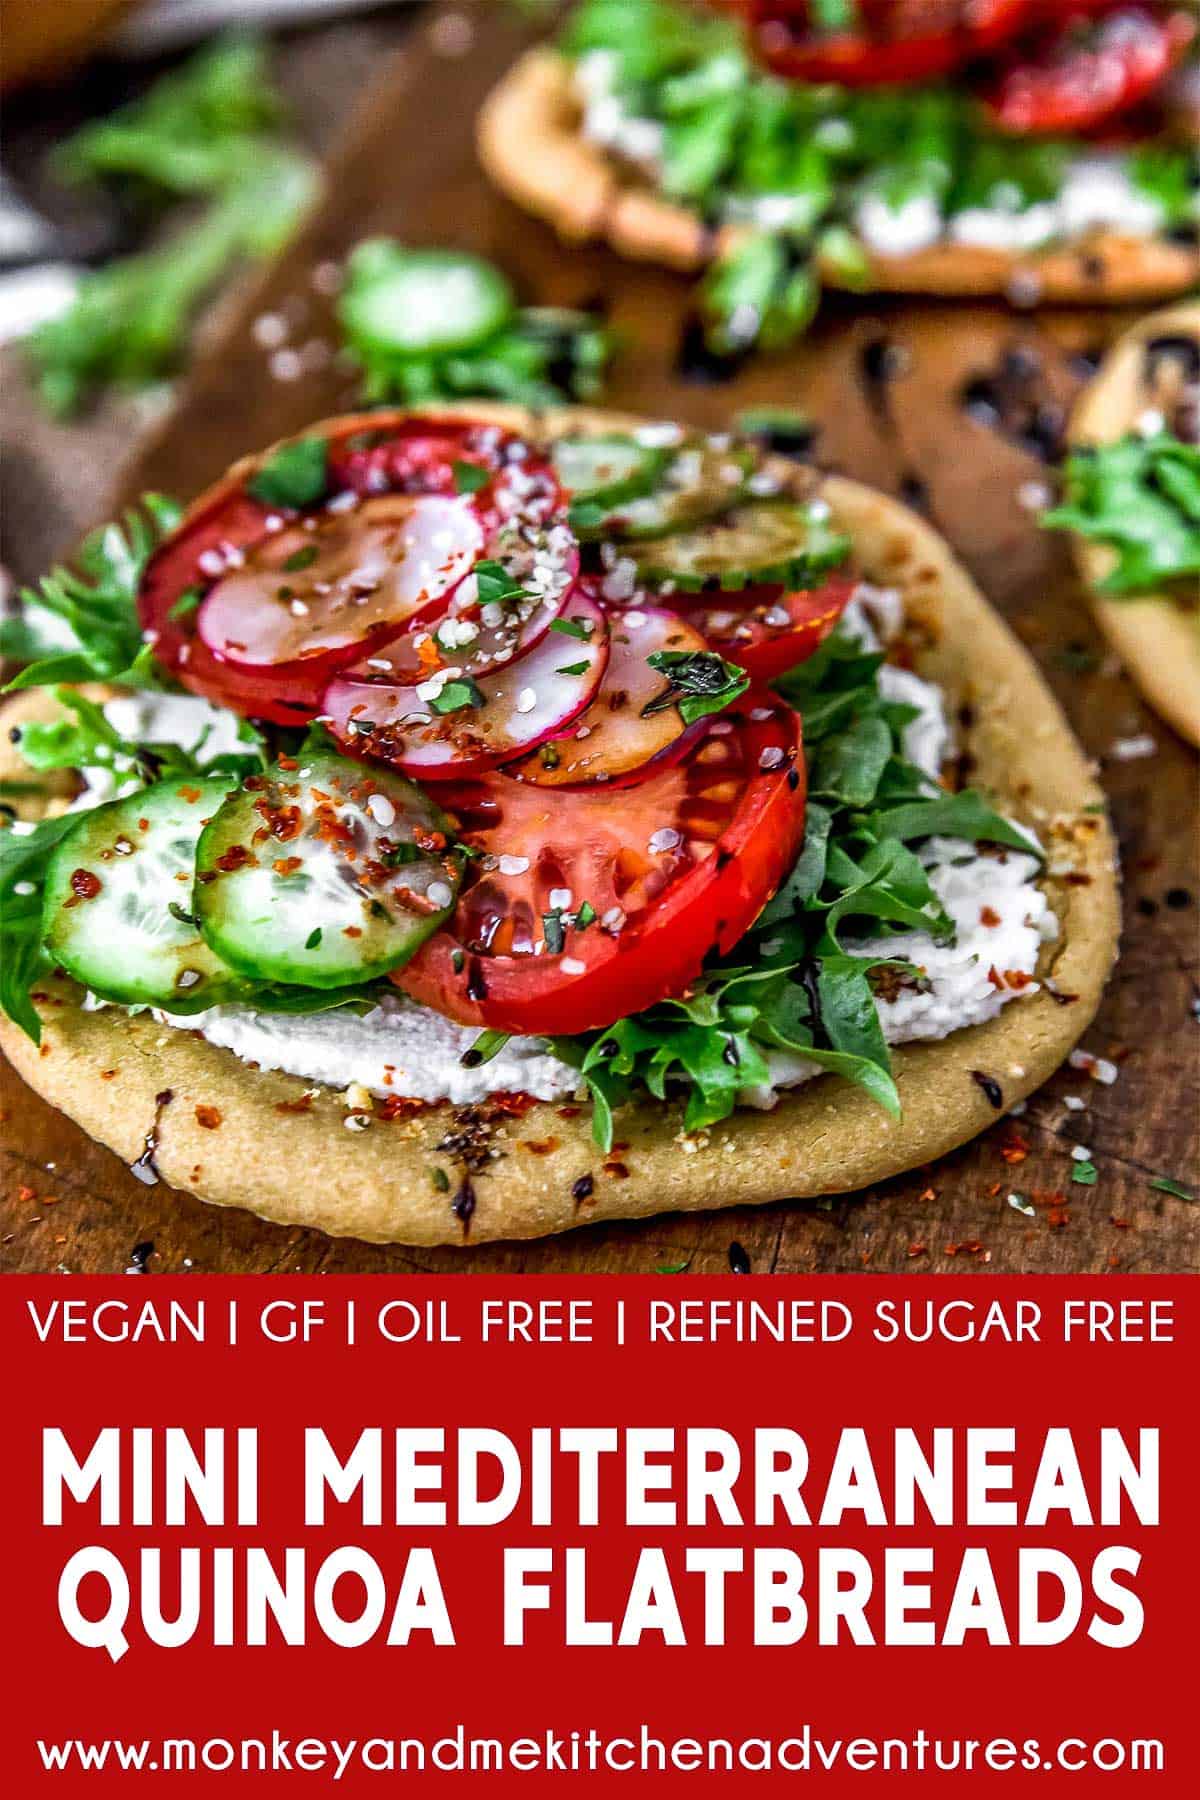 Mini Mediterranean Quinoa Flatbreads with text description